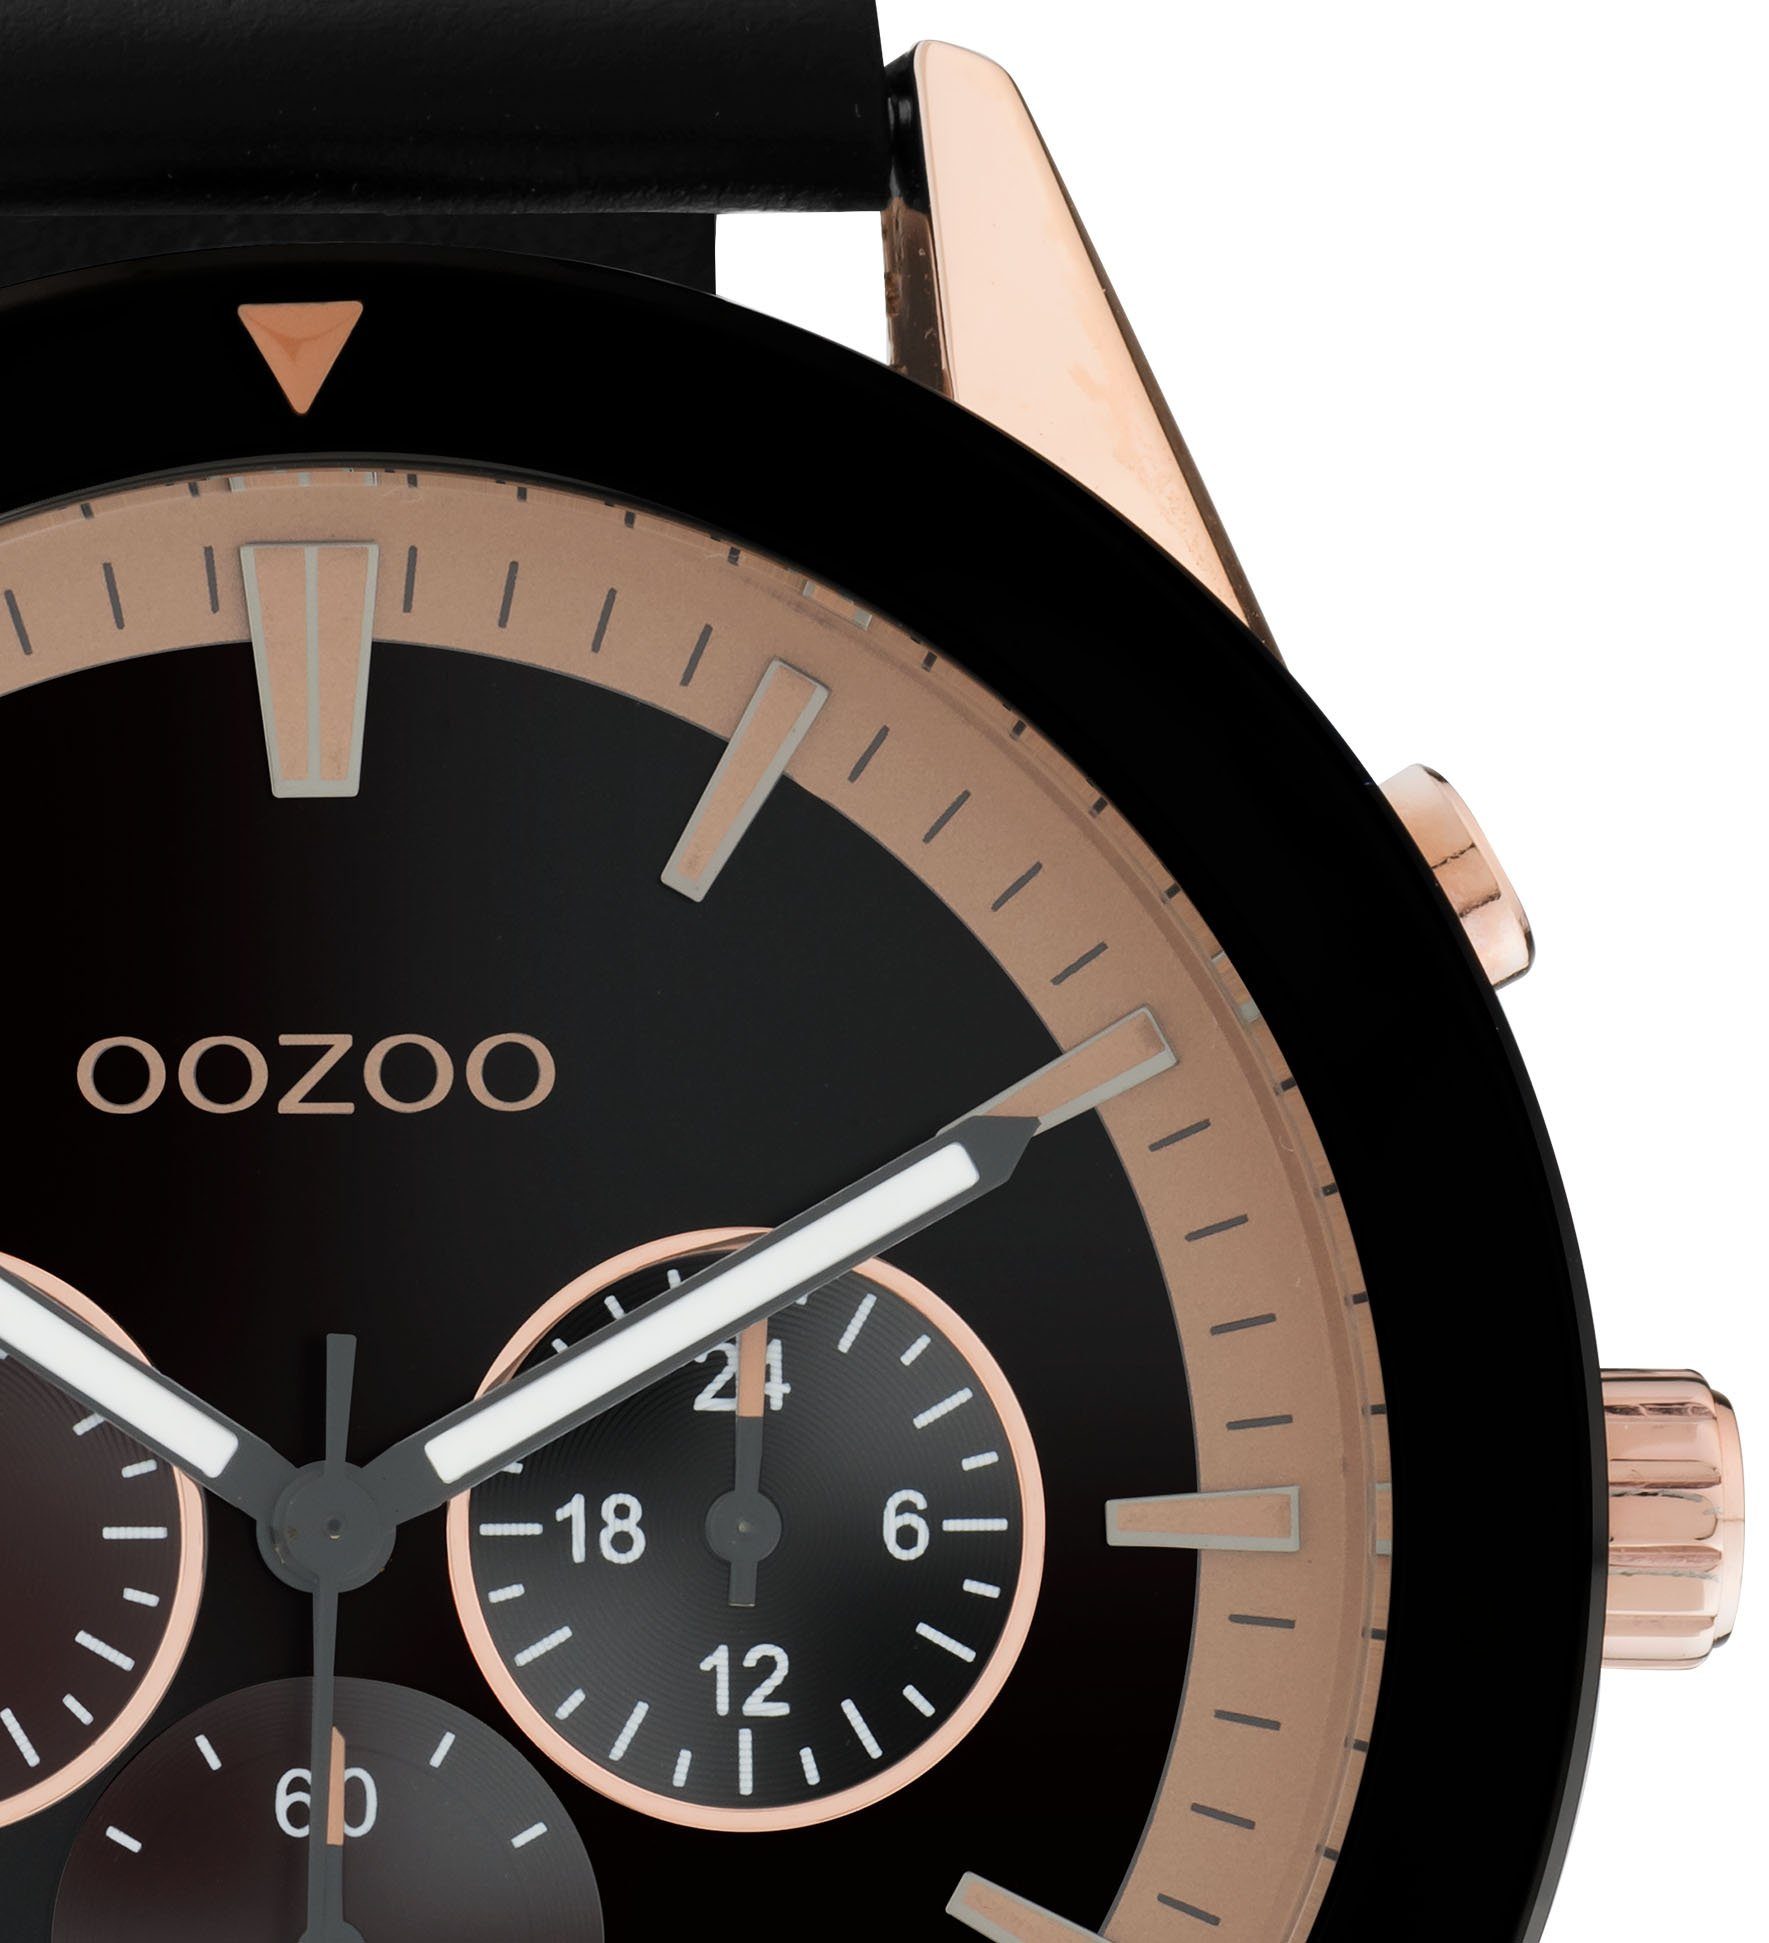 OOZOO Quarzuhr C10804, Metallgehäuse, roségoldfarben-schwarz  IP-beschichtet, Ø ca. 45 mm